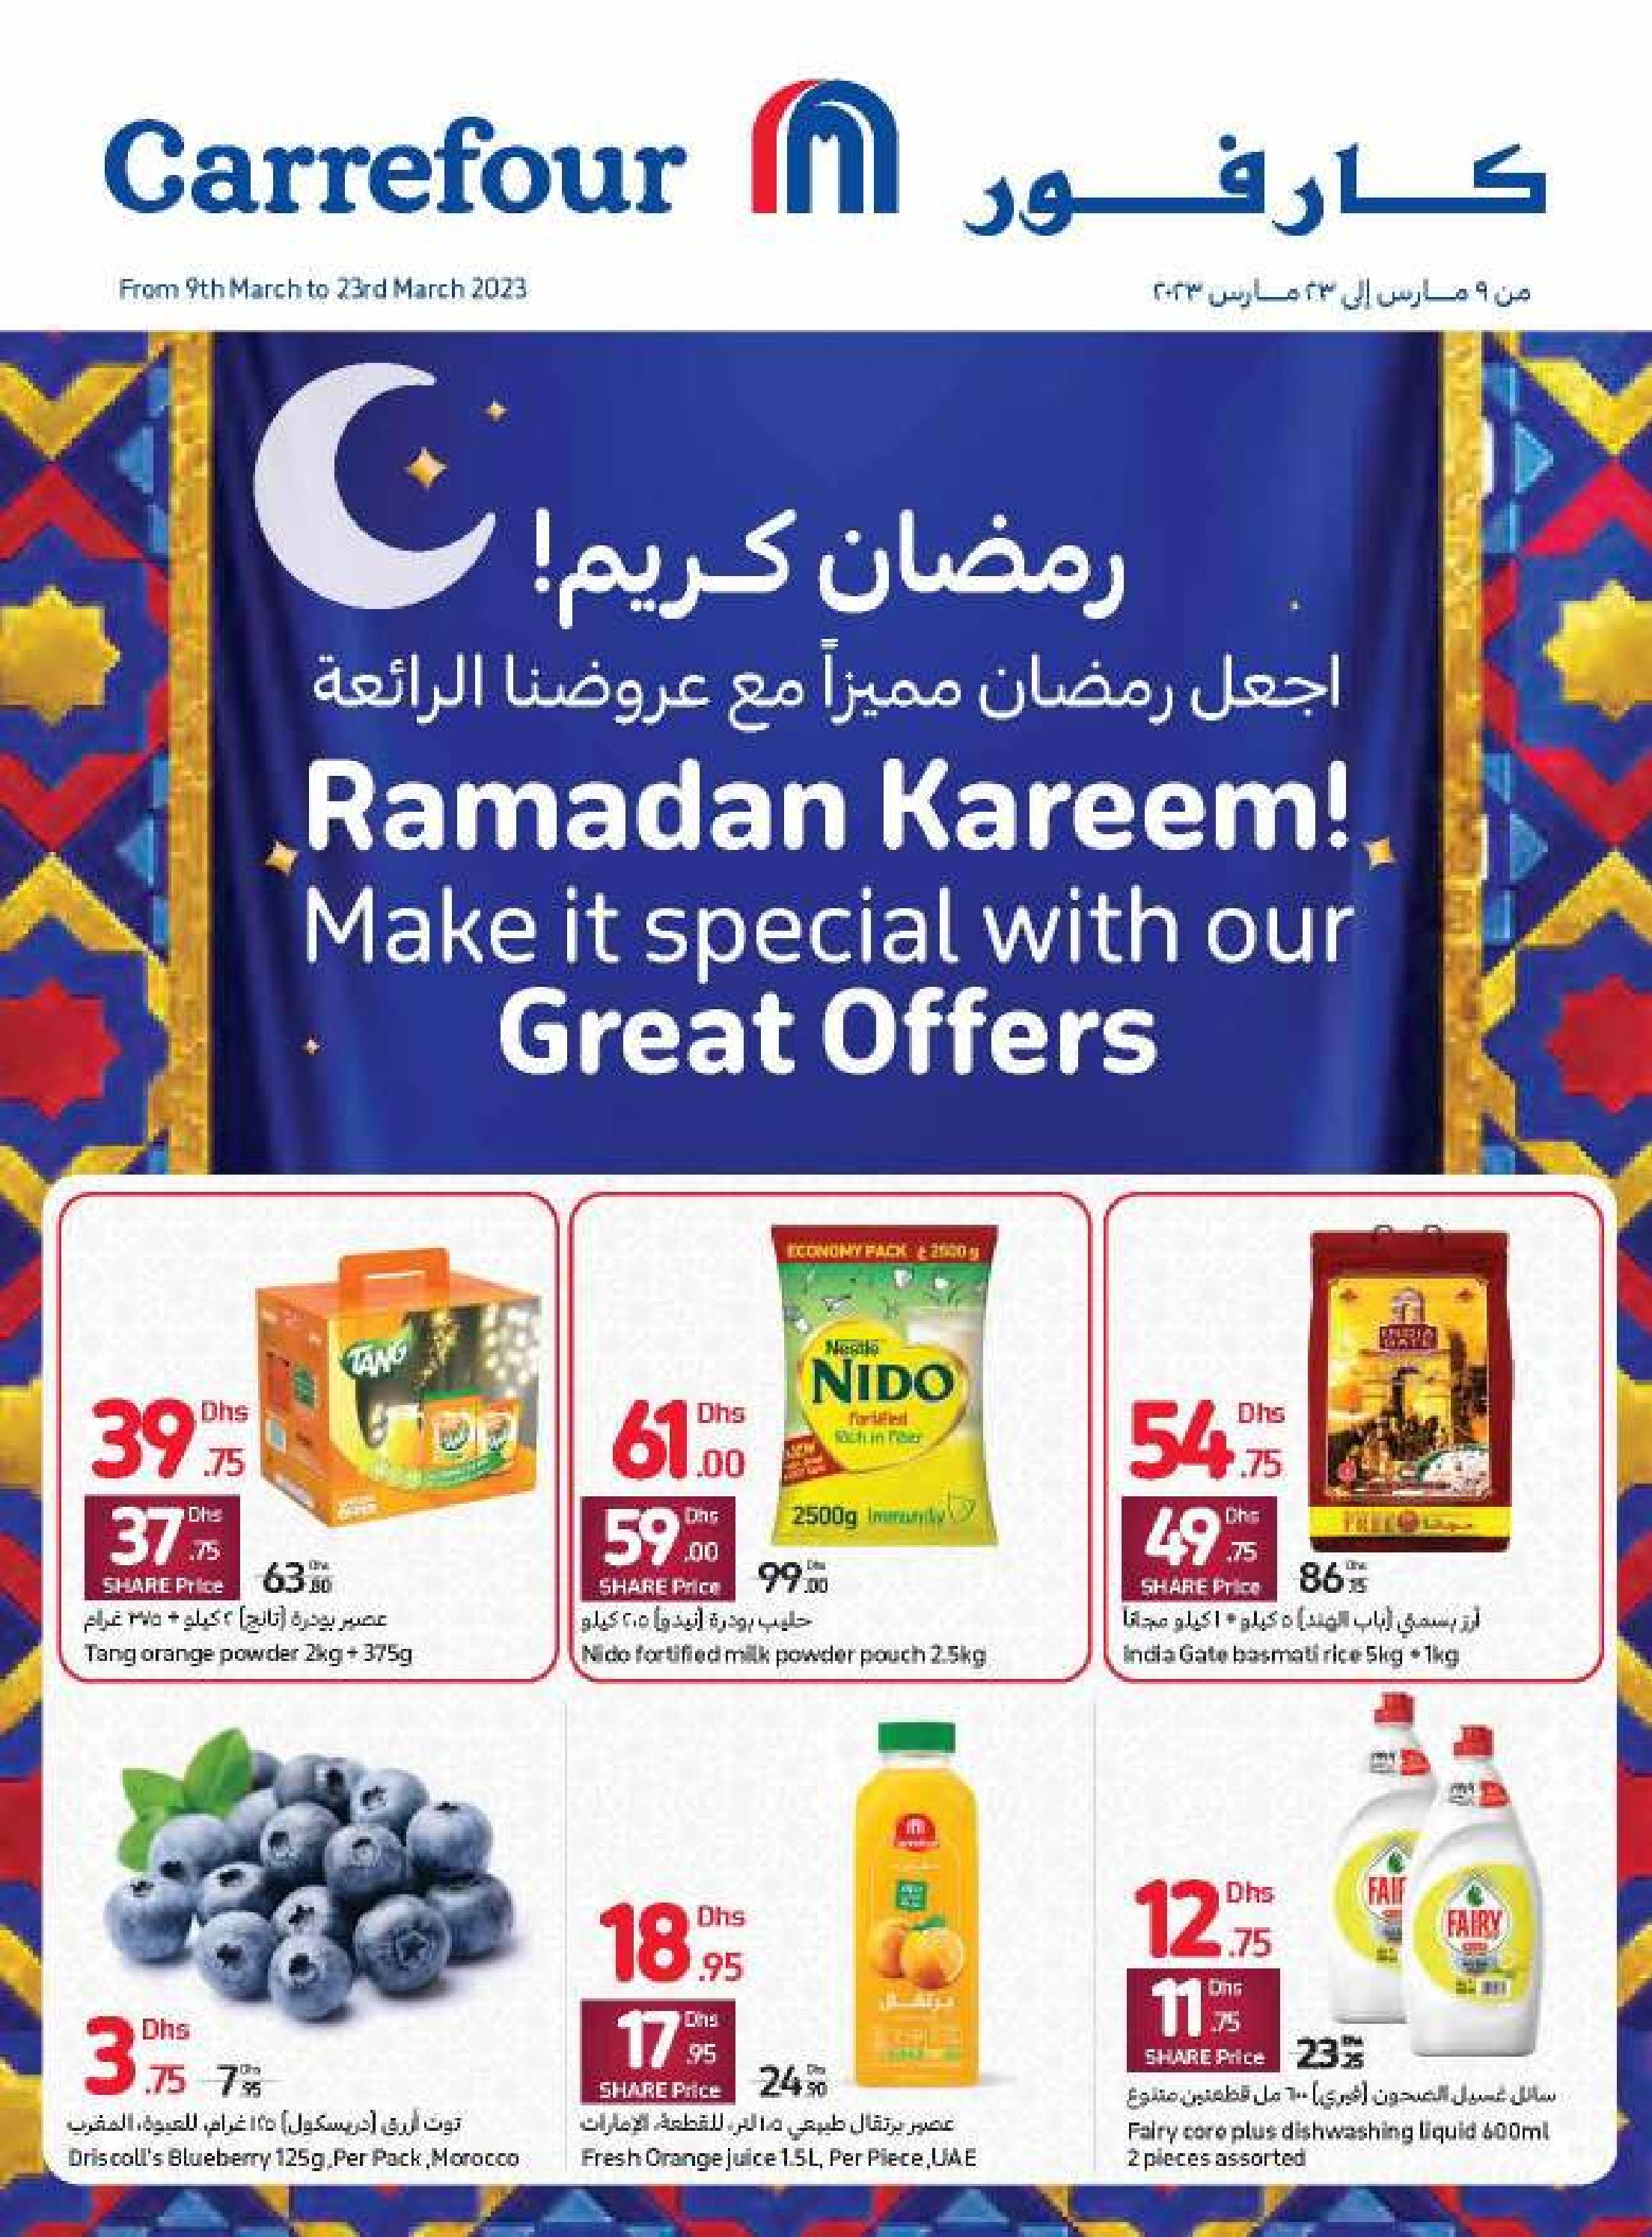 Carrefour-Ramadan-Offers